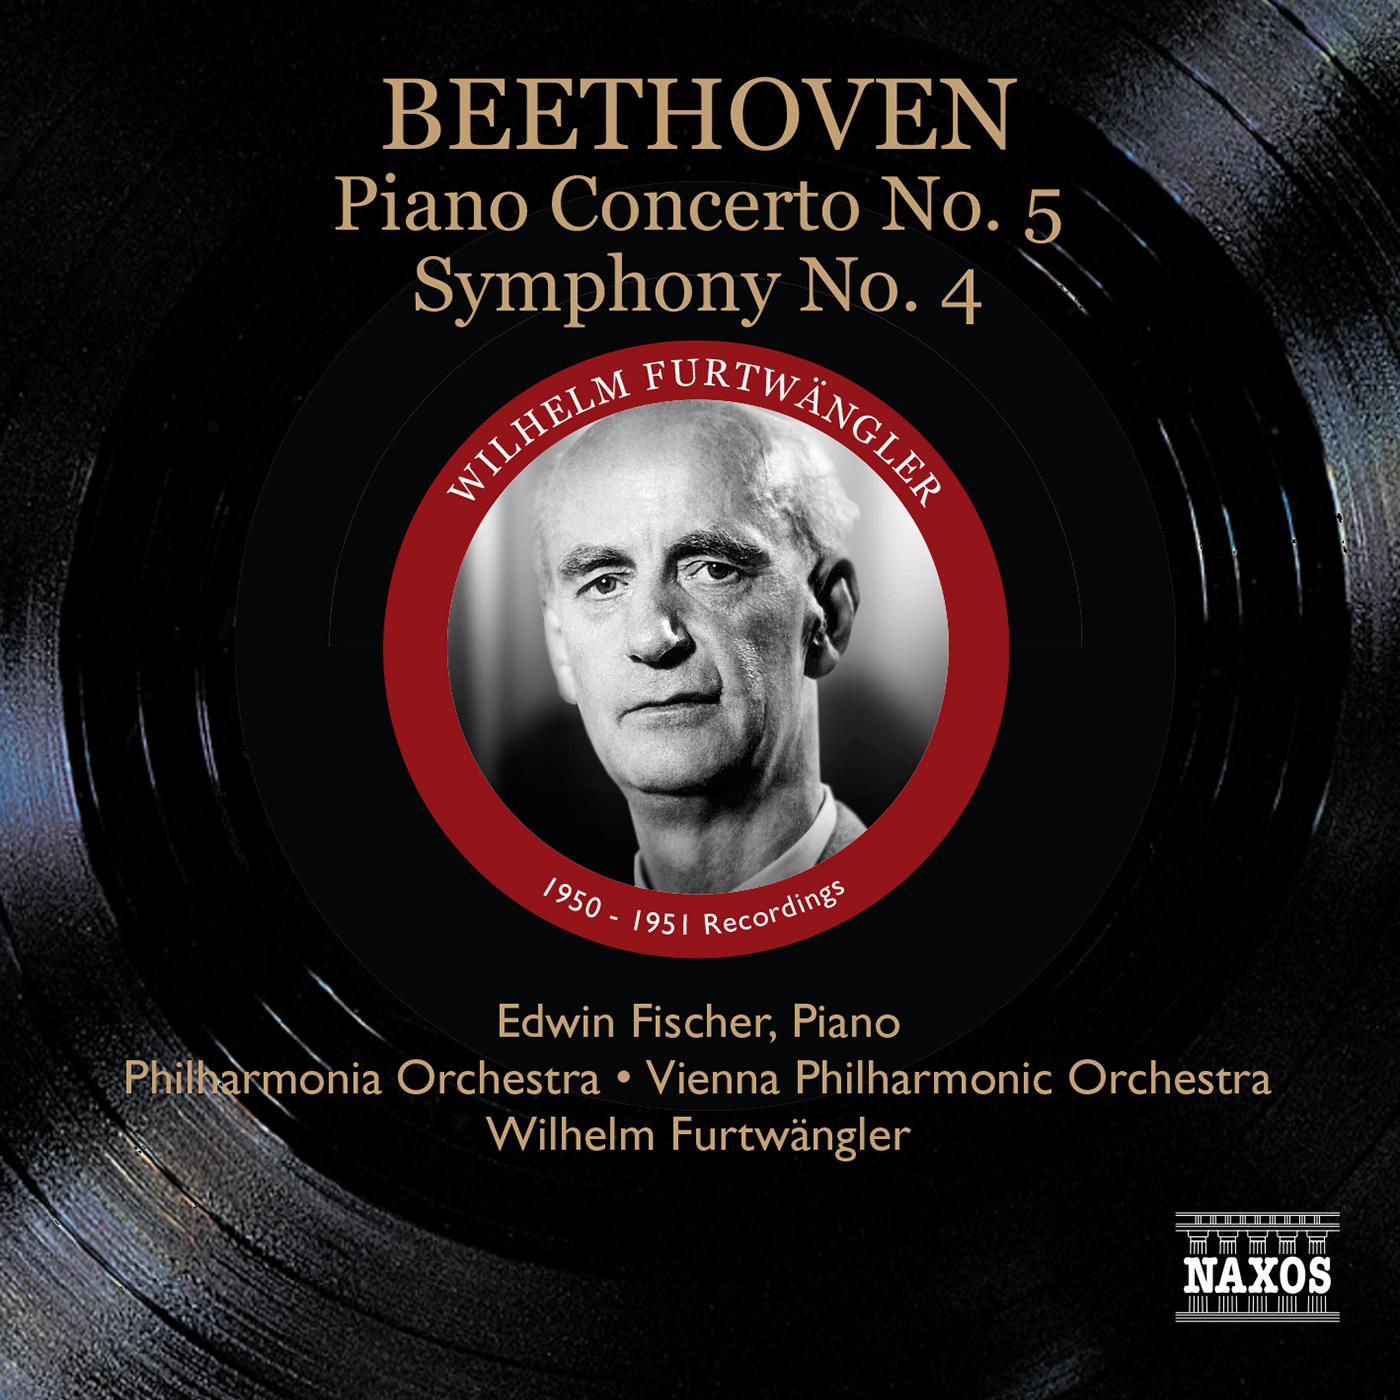 BEETHOVEN, L. van: Piano Concerto No. 5 / Symphony No. 4 (Fischer, Furtwangler) (1950-1951)